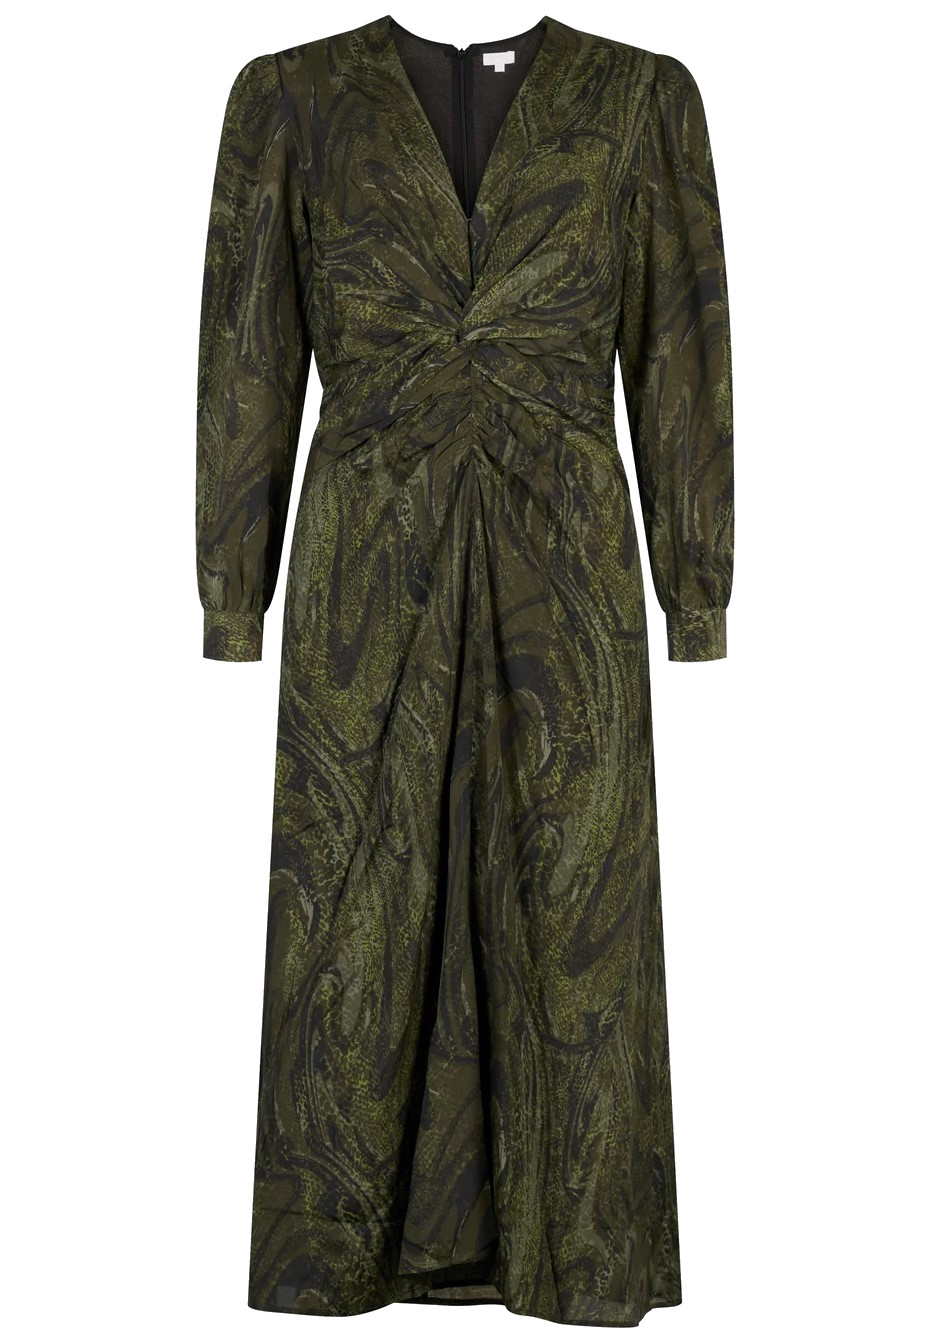 LALA BERLIN Dress Dollyne in Agate Green